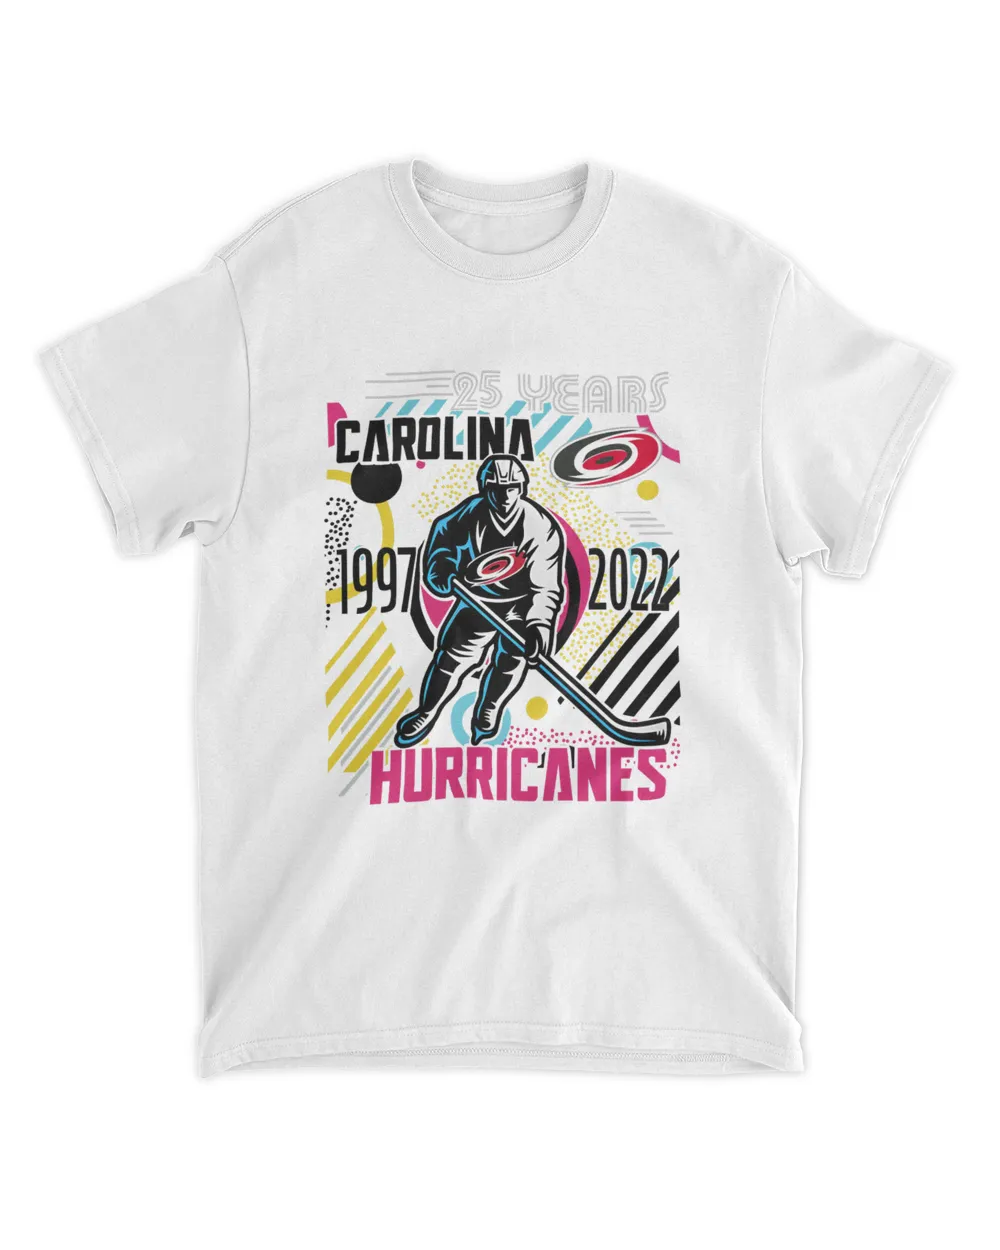 25 Years Carolina 1997 2022 Hurricanes Shirt